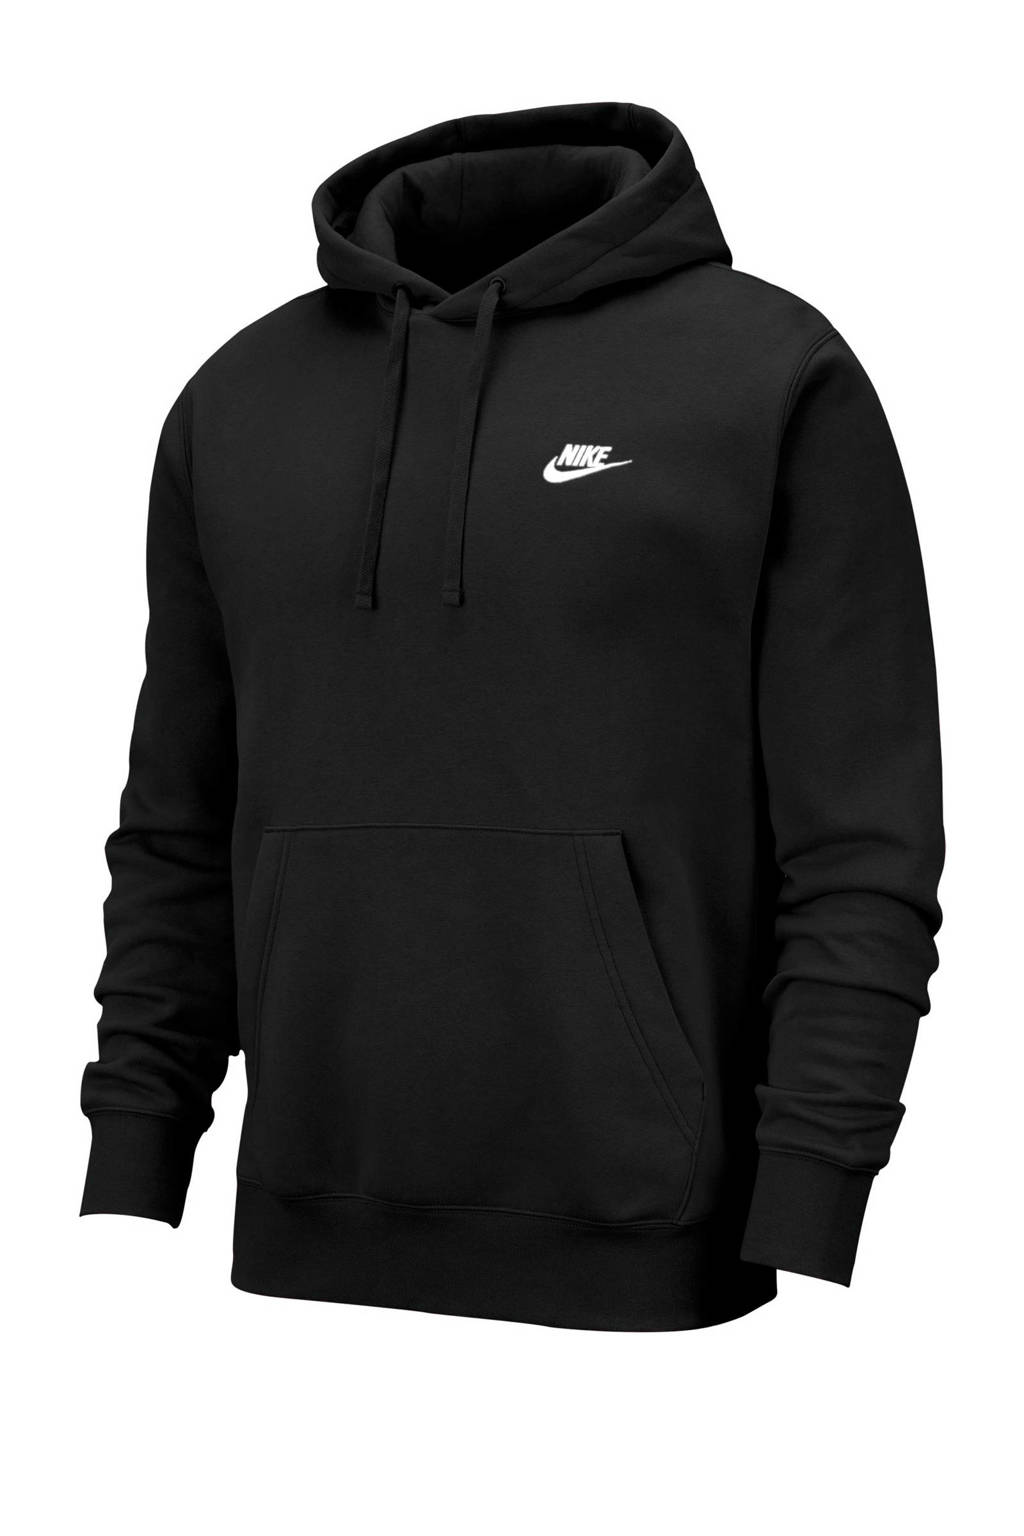 Kilauea Mountain Overredend dealer Nike hoodie zwart kopen? | Morgen in huis | wehkamp